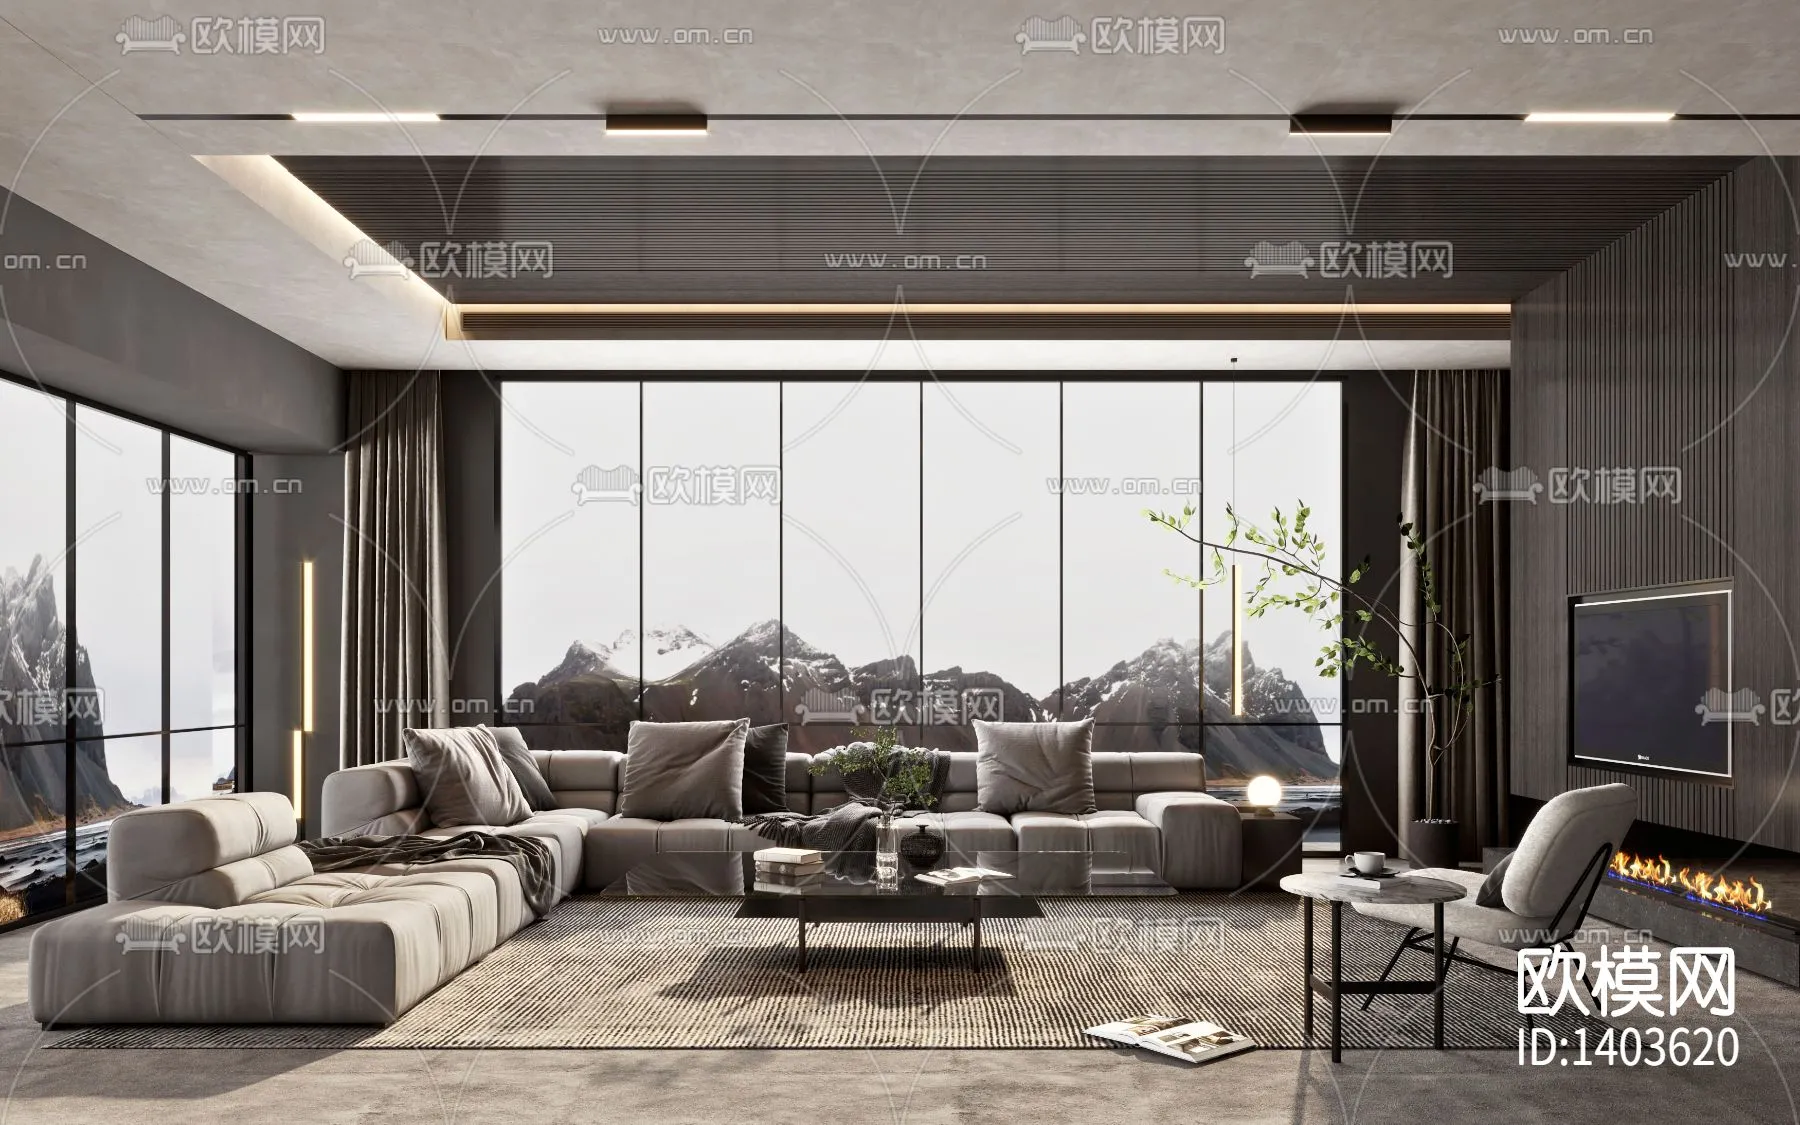 Living Room 3D Scenes – 0605